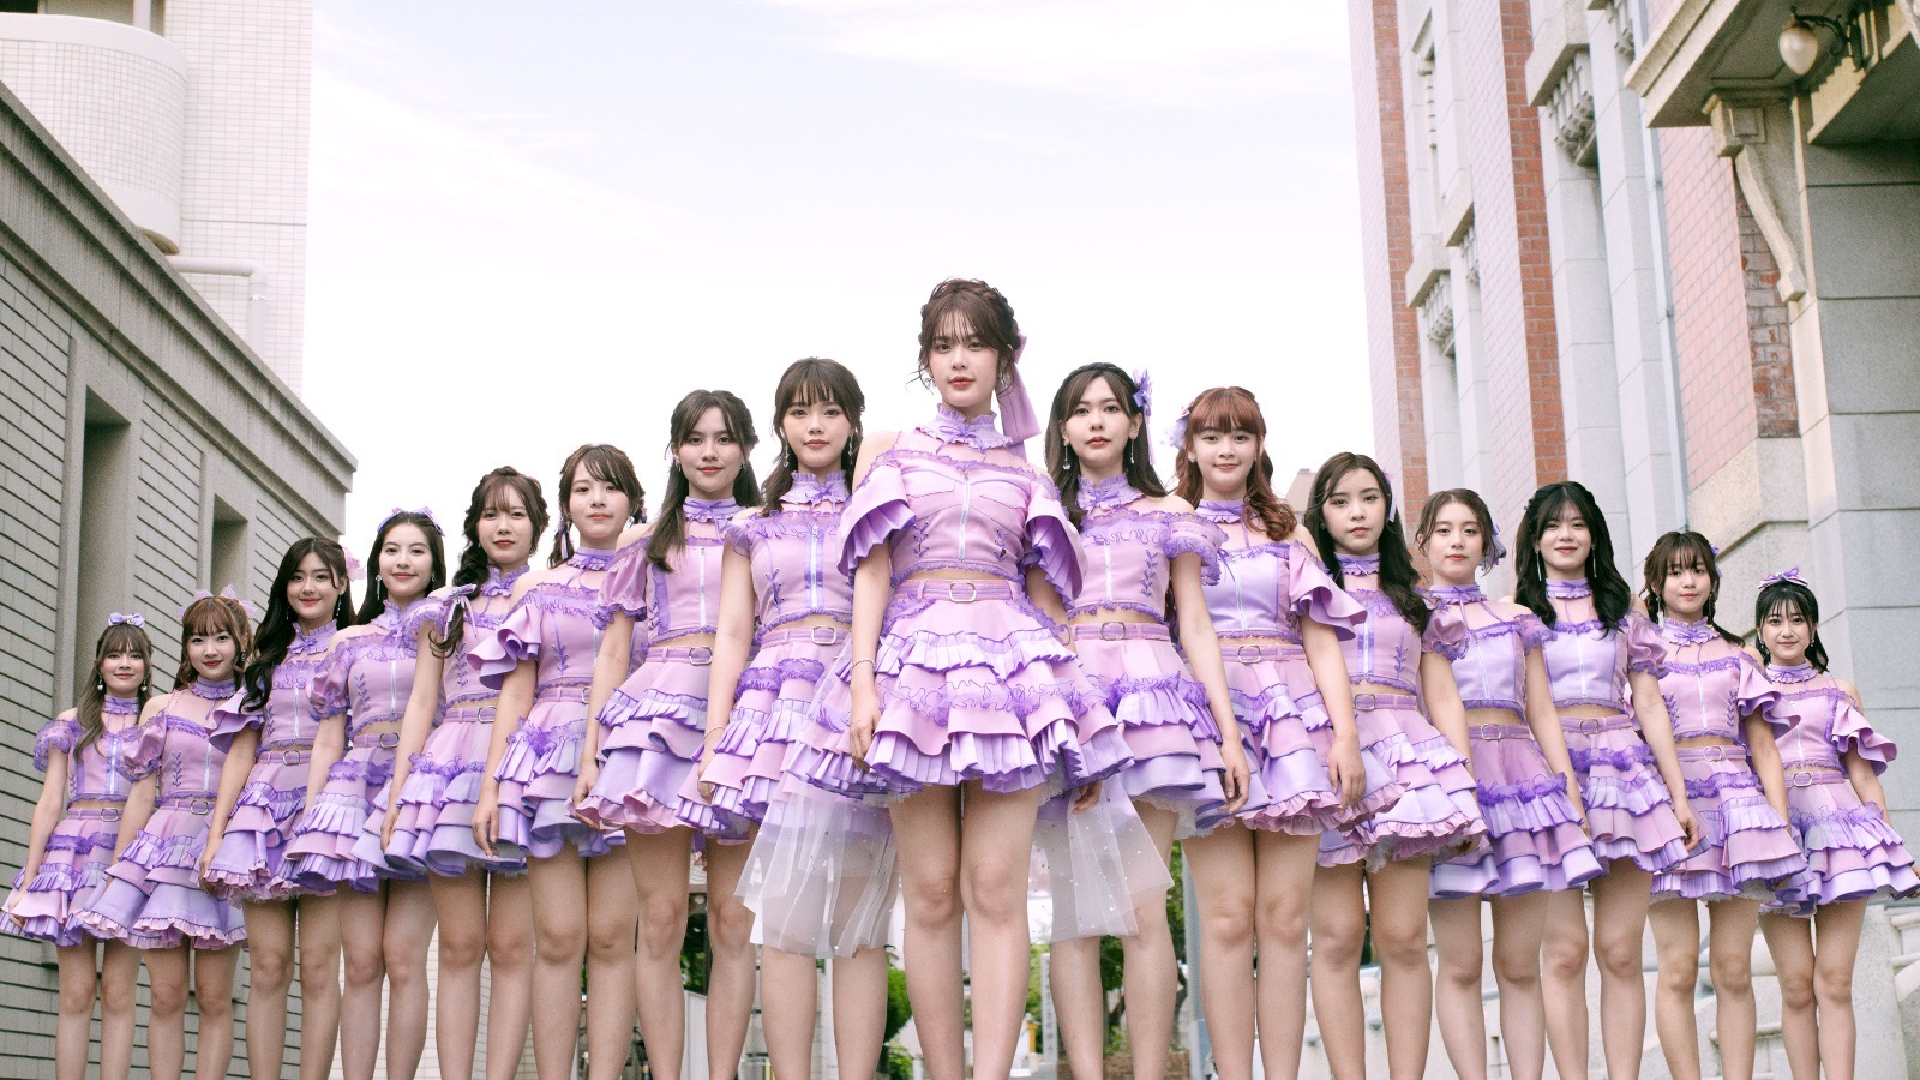 เพลง Believers วง BNK48 มัดรวมความพิเศษทุกมิติ พร้อมได้รุ่นพี่จาก AKB48 เขียนเนื้อเพลงและออกแบบท่าเต้น